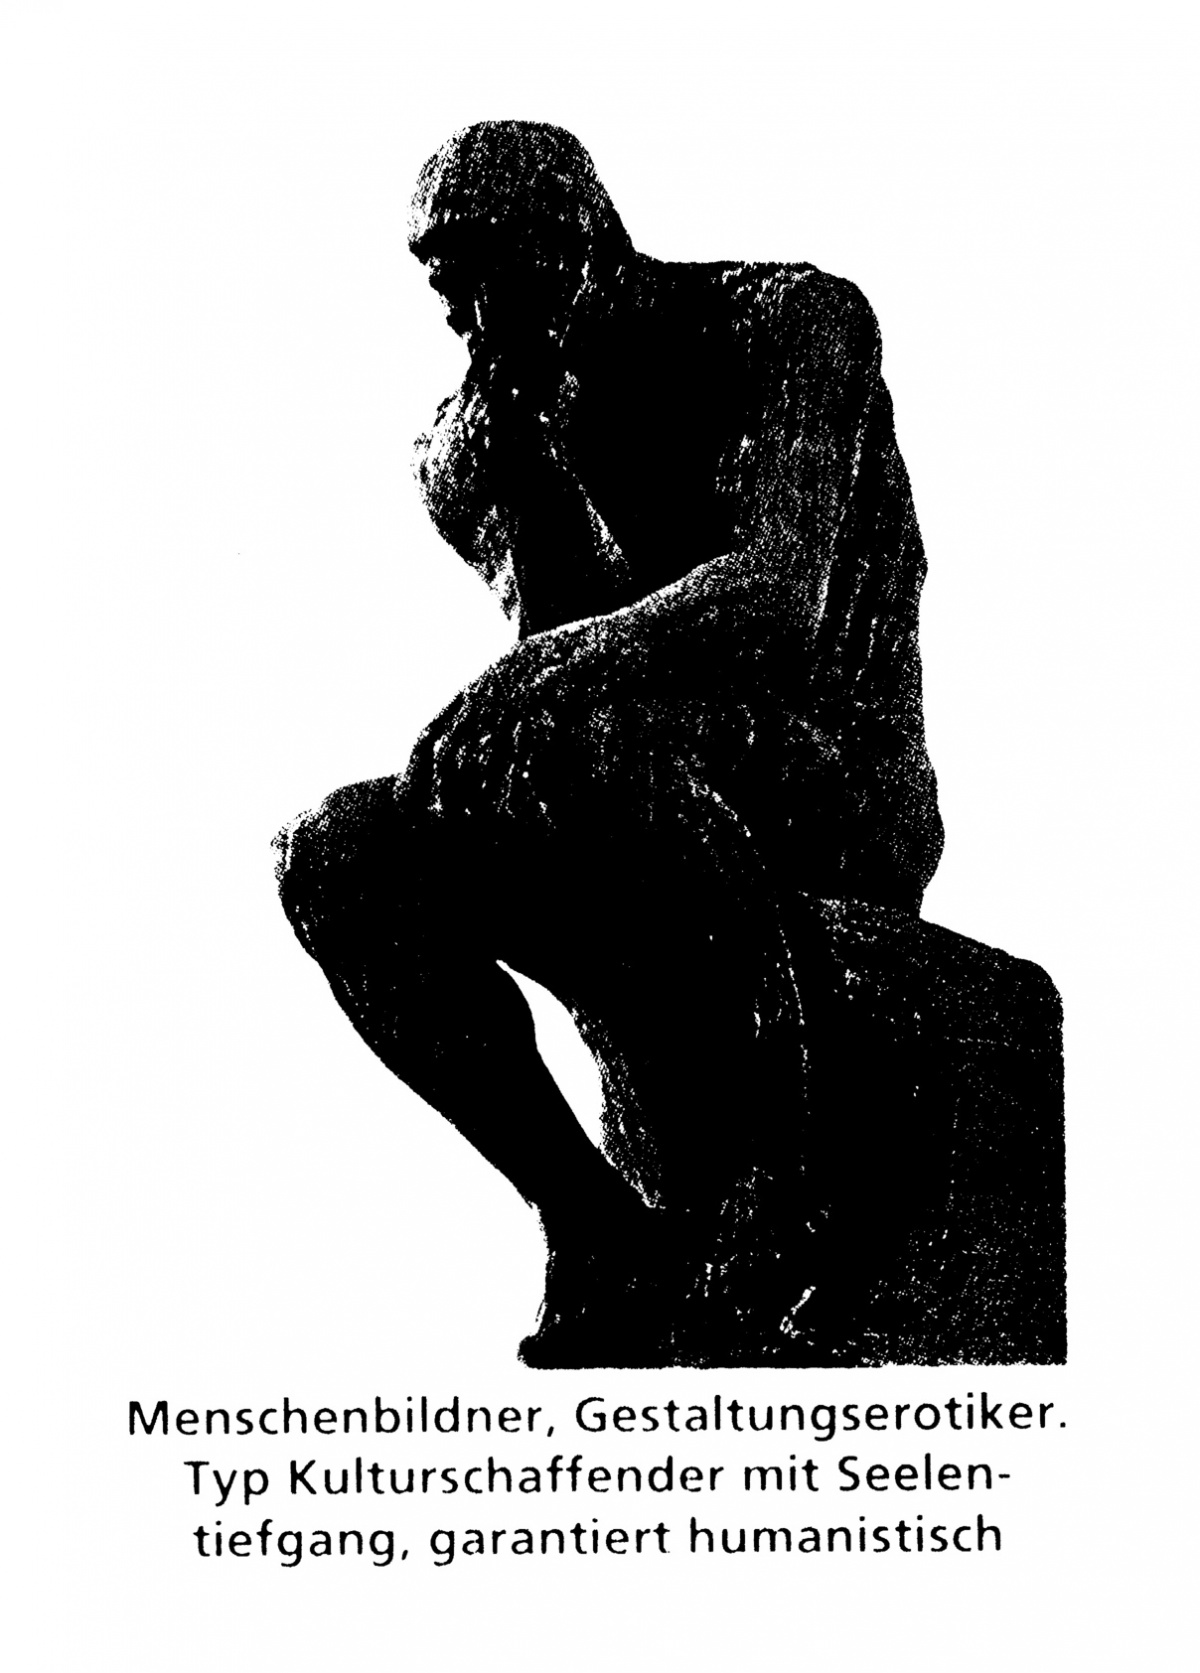 "Biographiedesign, Ulrich Löchter, Bitte zur Anprobe", Bild: Menschenbildner.